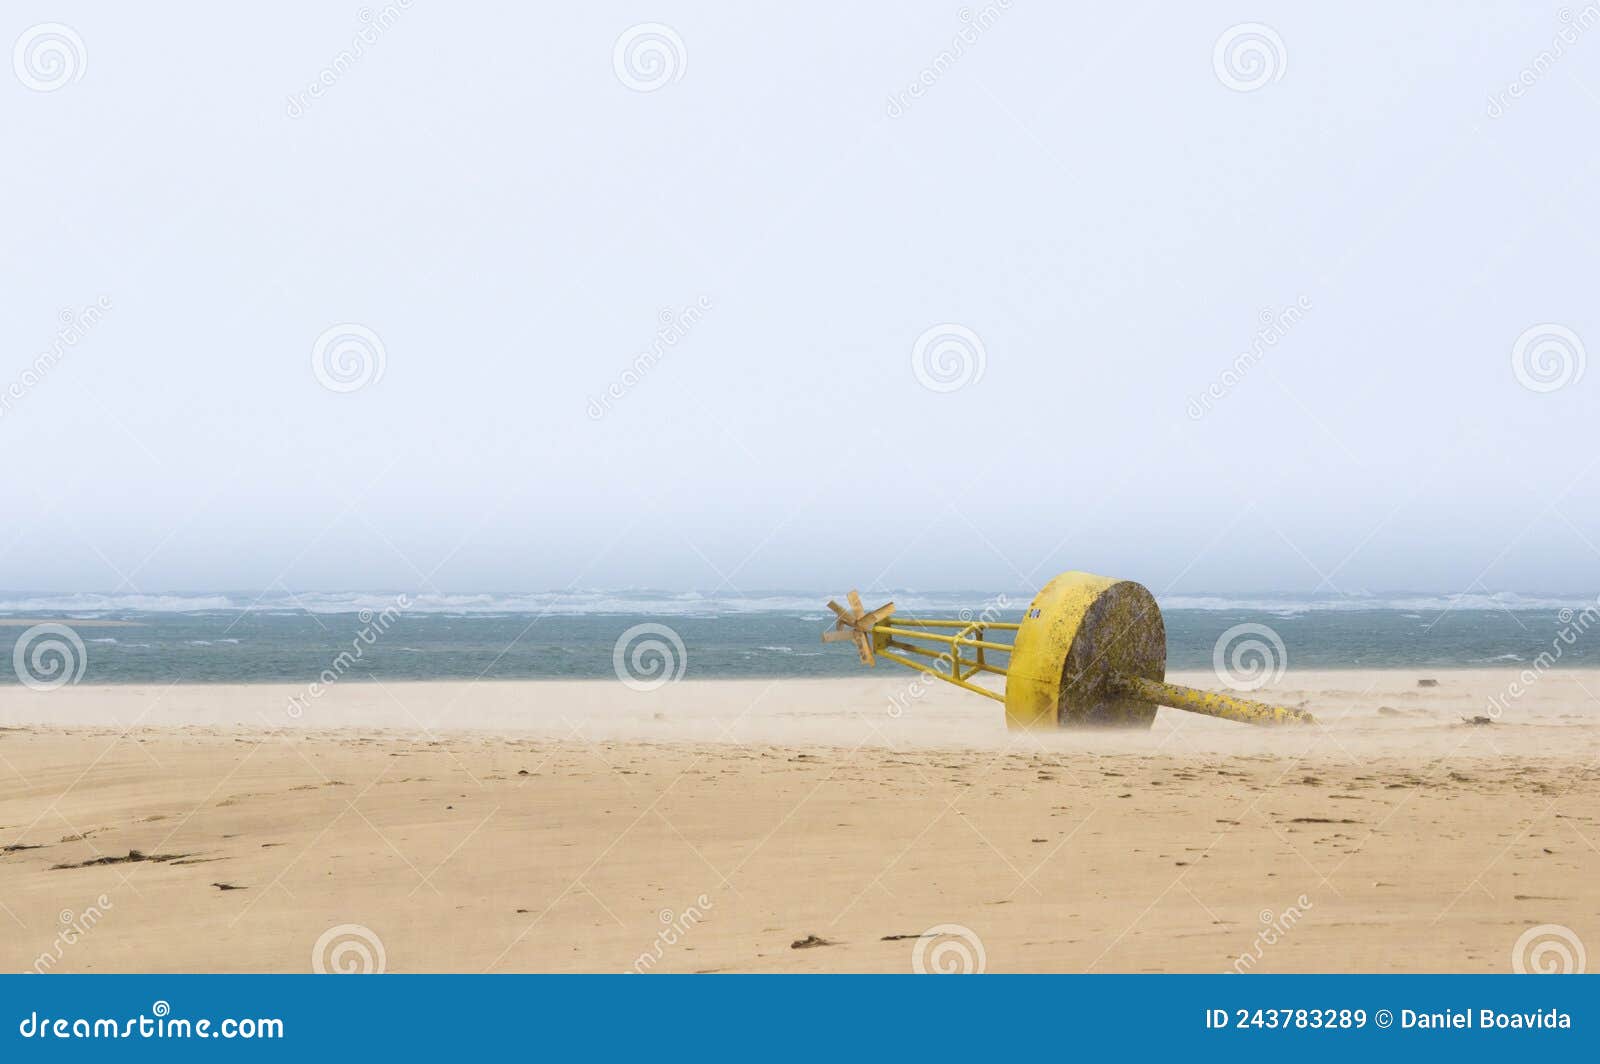 abandon buoy at the beach at armona island coast